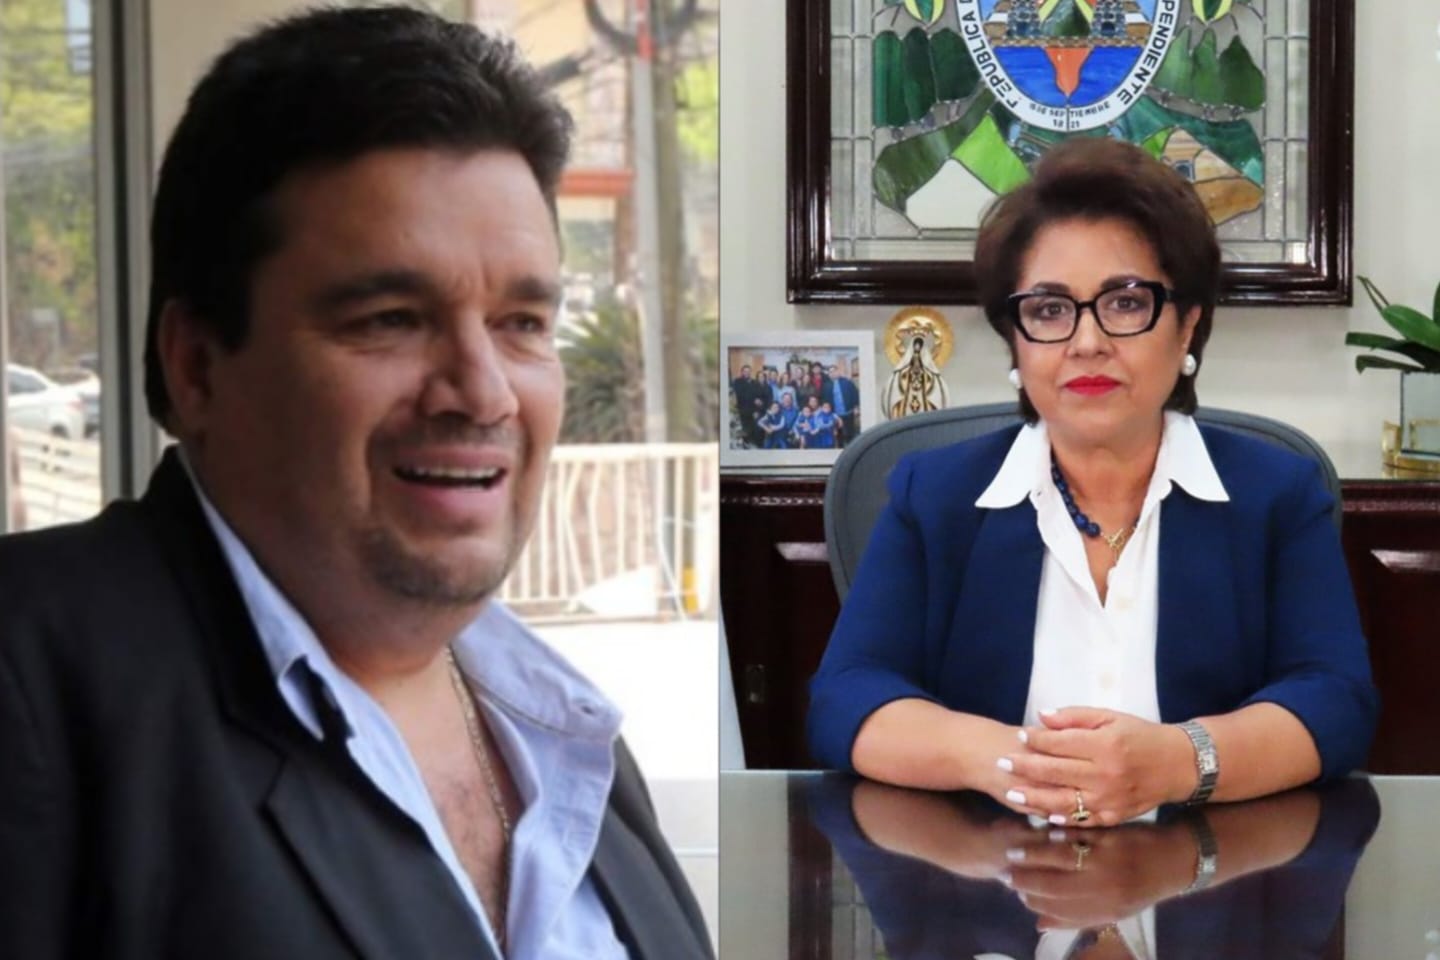 Parentesco del aspirante a Fiscal, Yuri Melara con Rebeca Ráquel no violenta la ley, dice JP